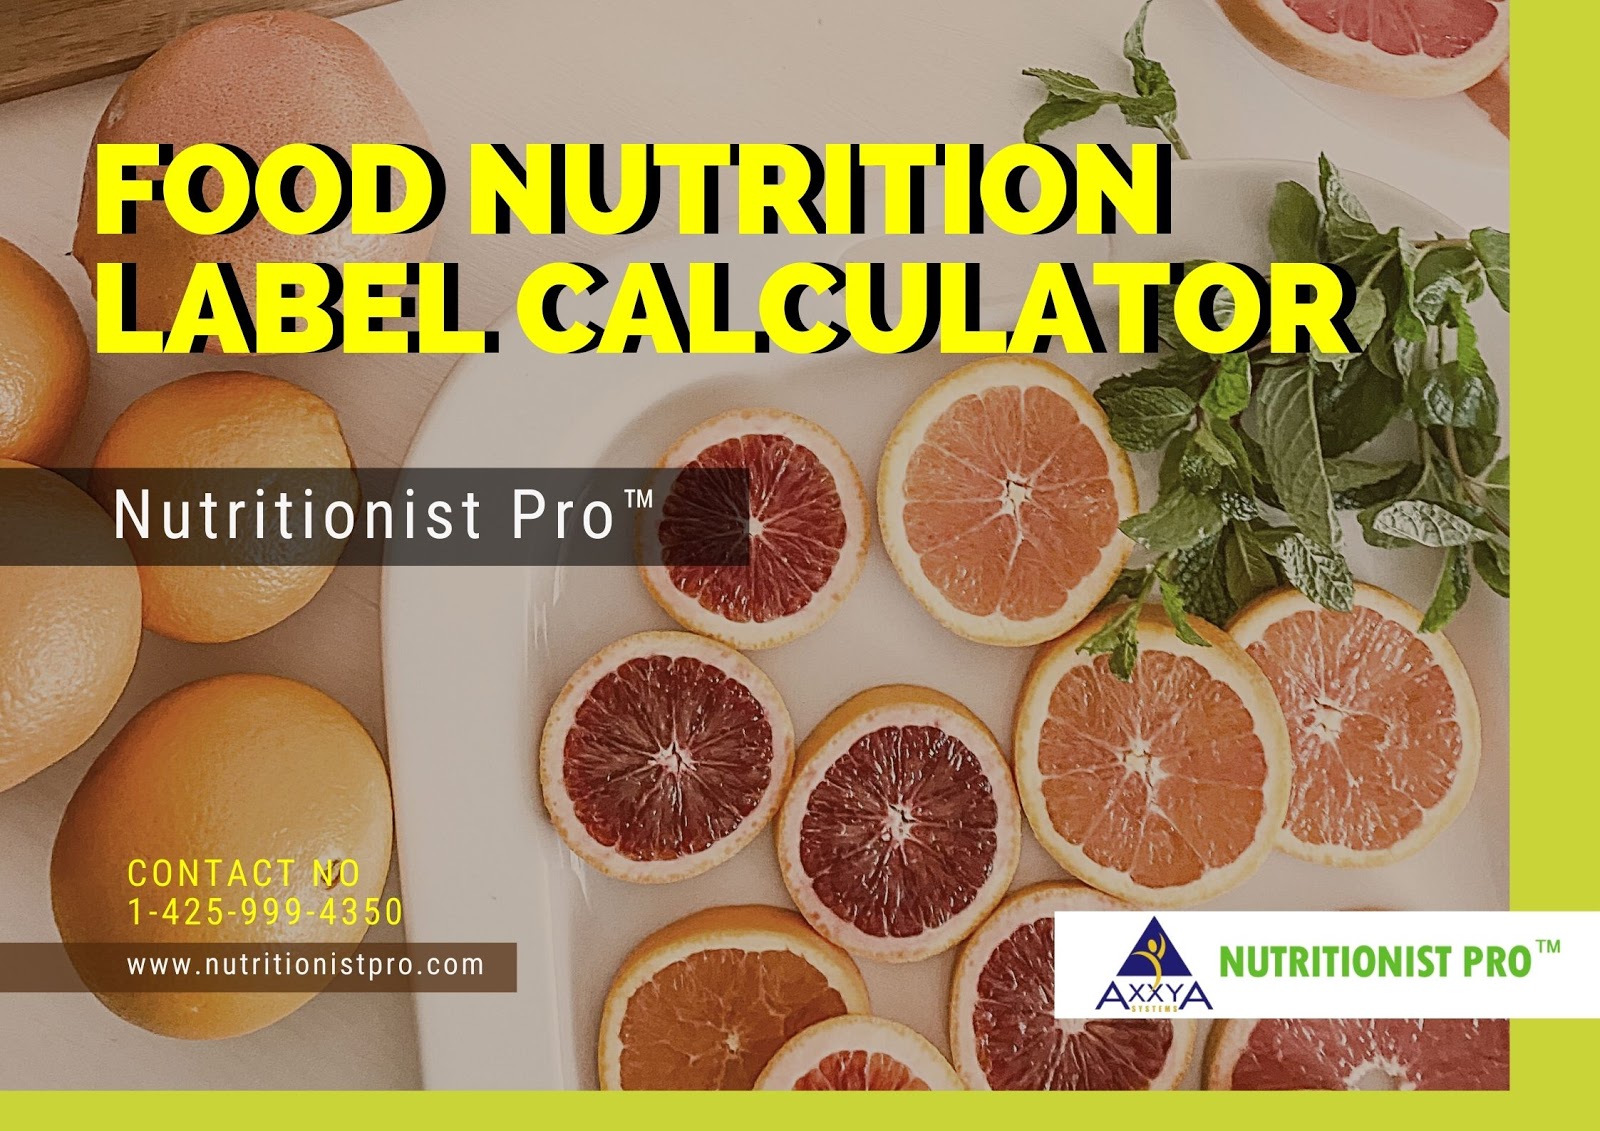 Nutrition calculators